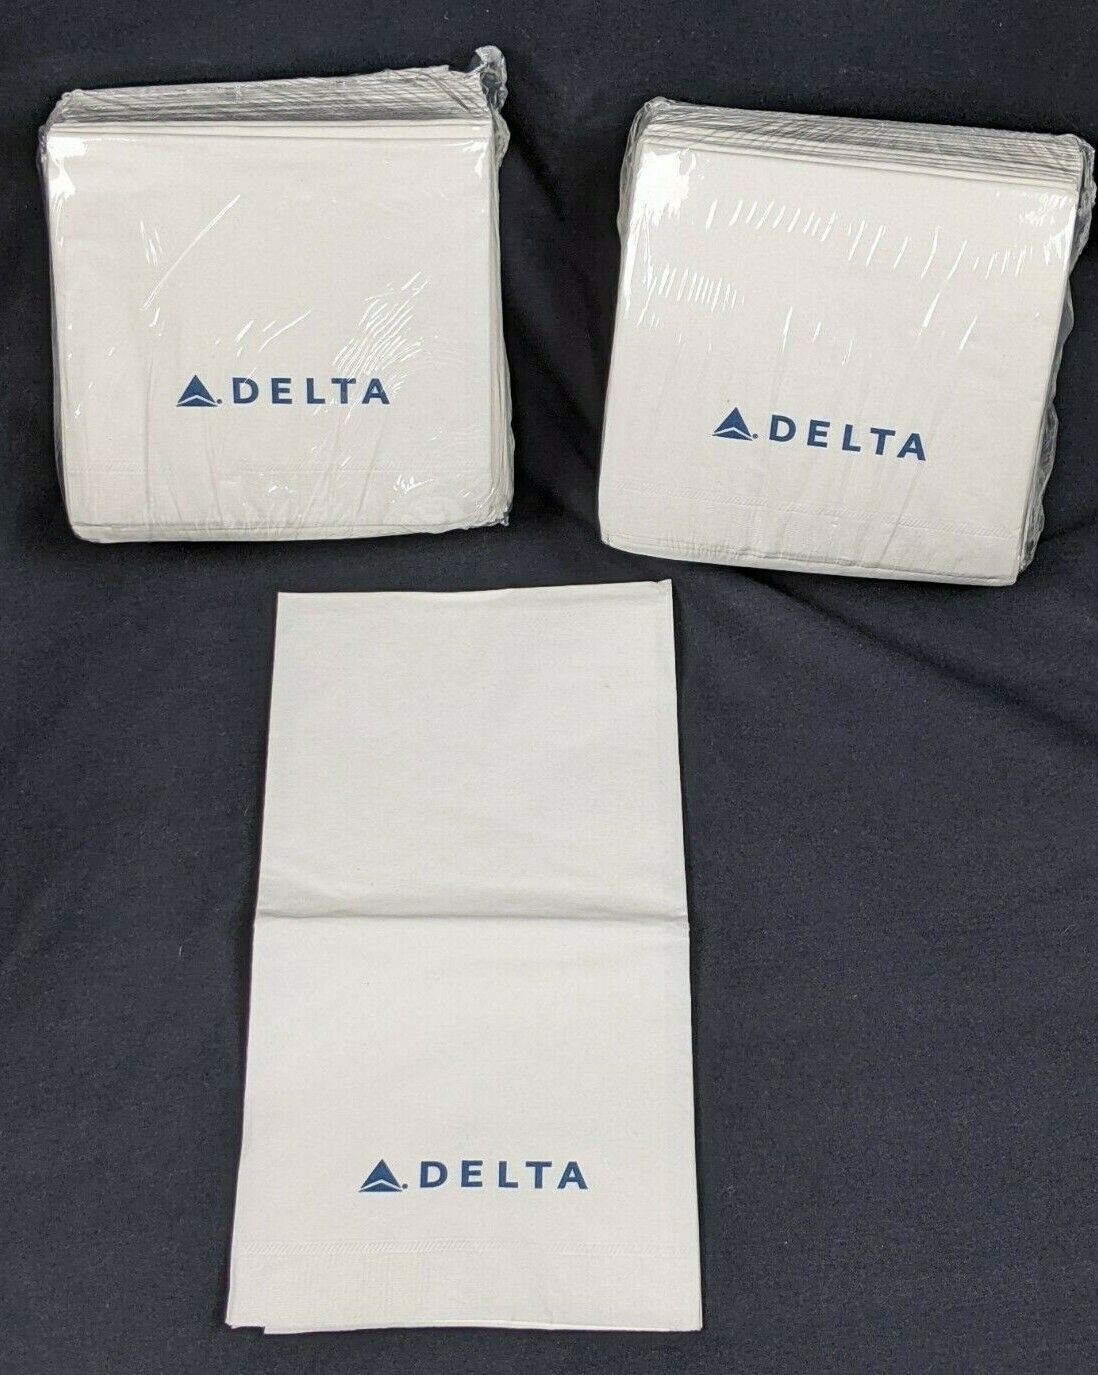 Delta Airlines Dinner Napkins - 2/25 packs - NEW